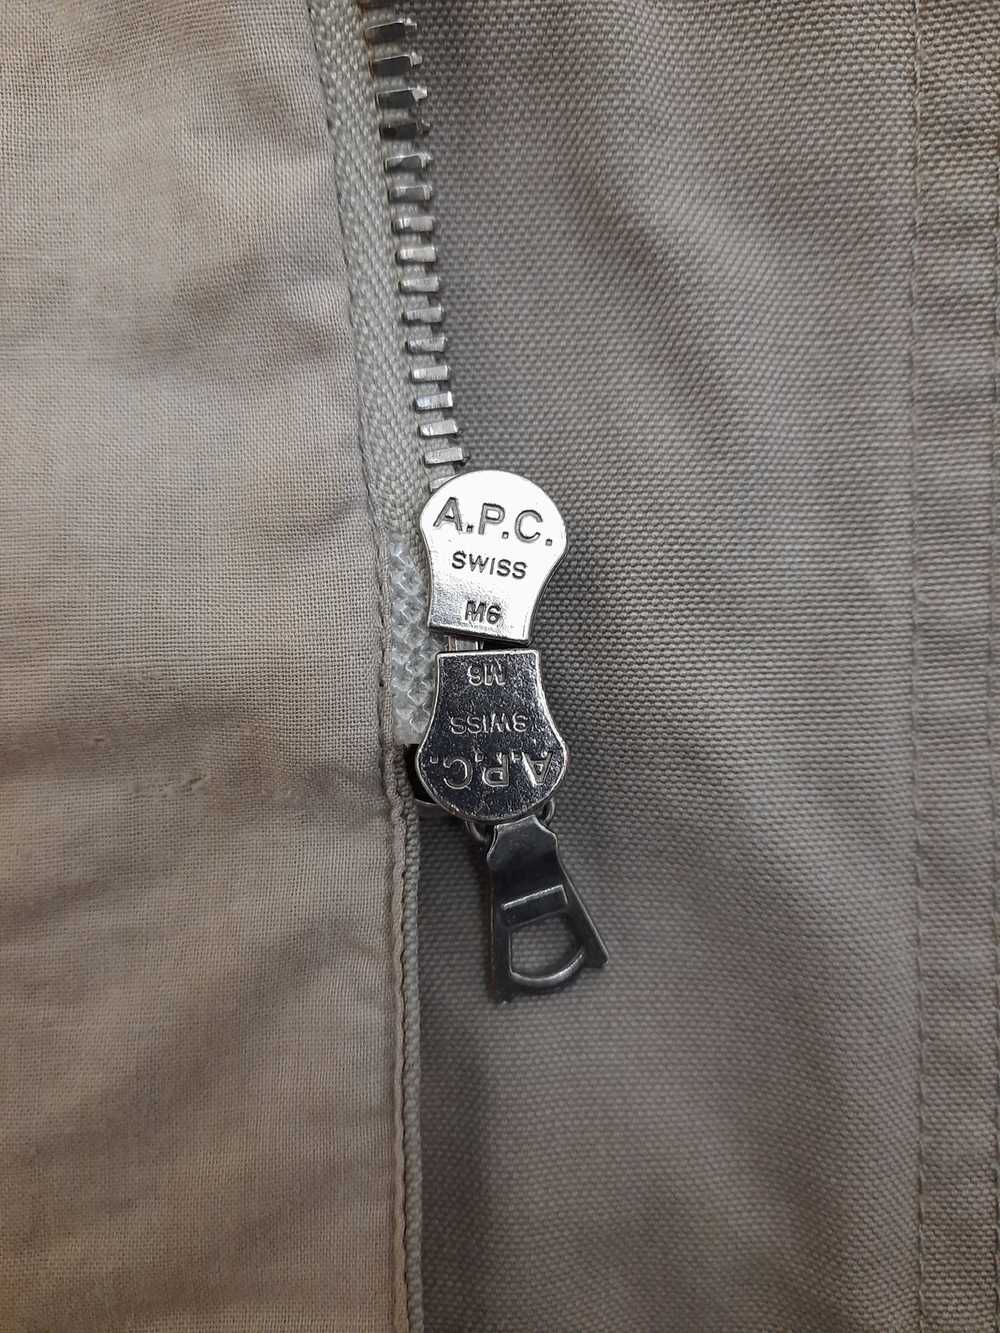 A.P.C. A P C cotton jacket - image 7